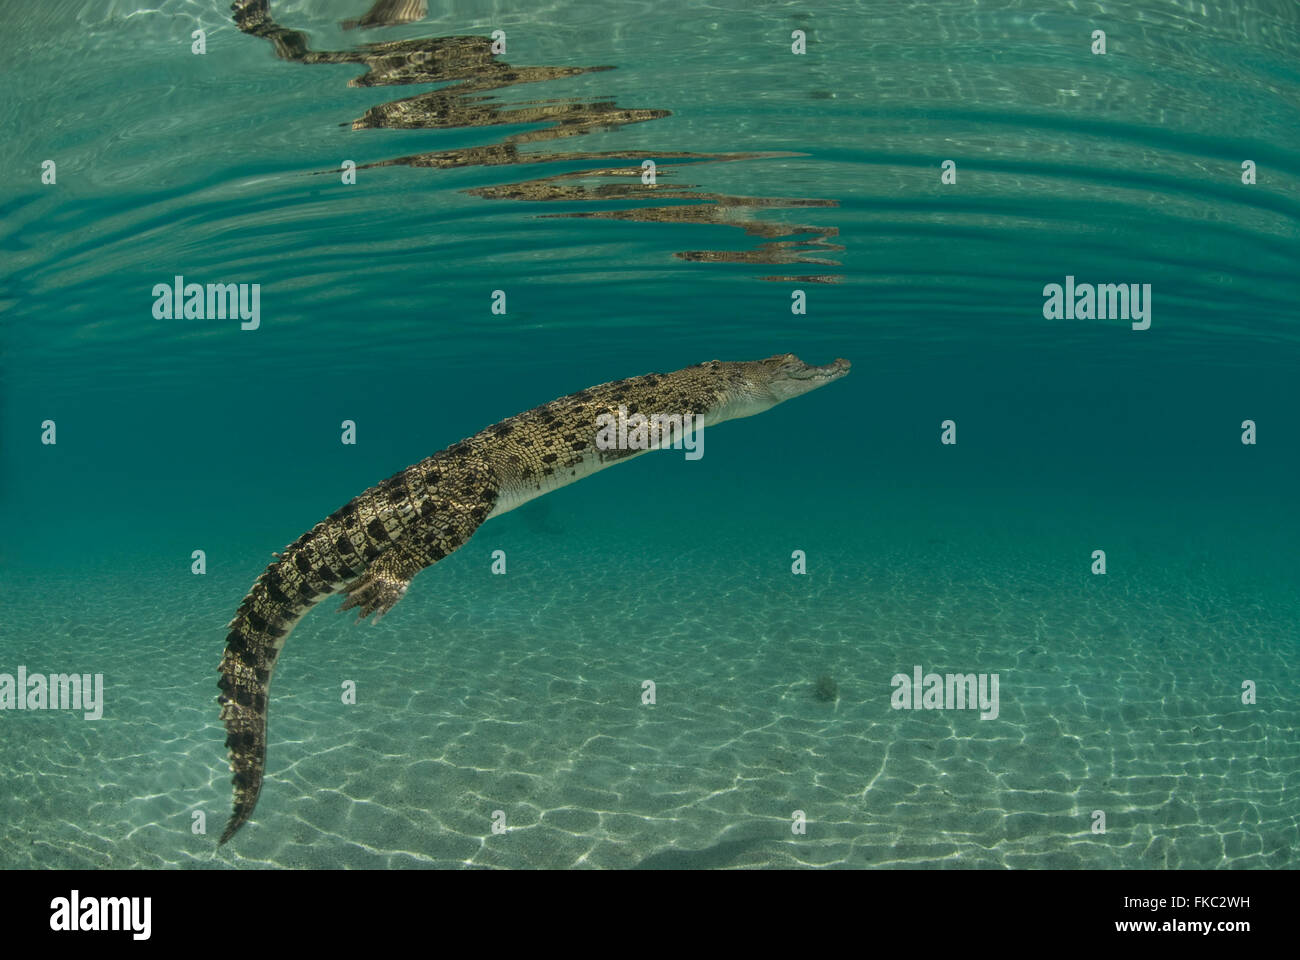 Salzwasser-Krokodil, Crocodylus Porosus ist die größte aller lebenden Krokodile und Reptilien. Es ist in geeigneten Lebensraum gefunden. Stockfoto